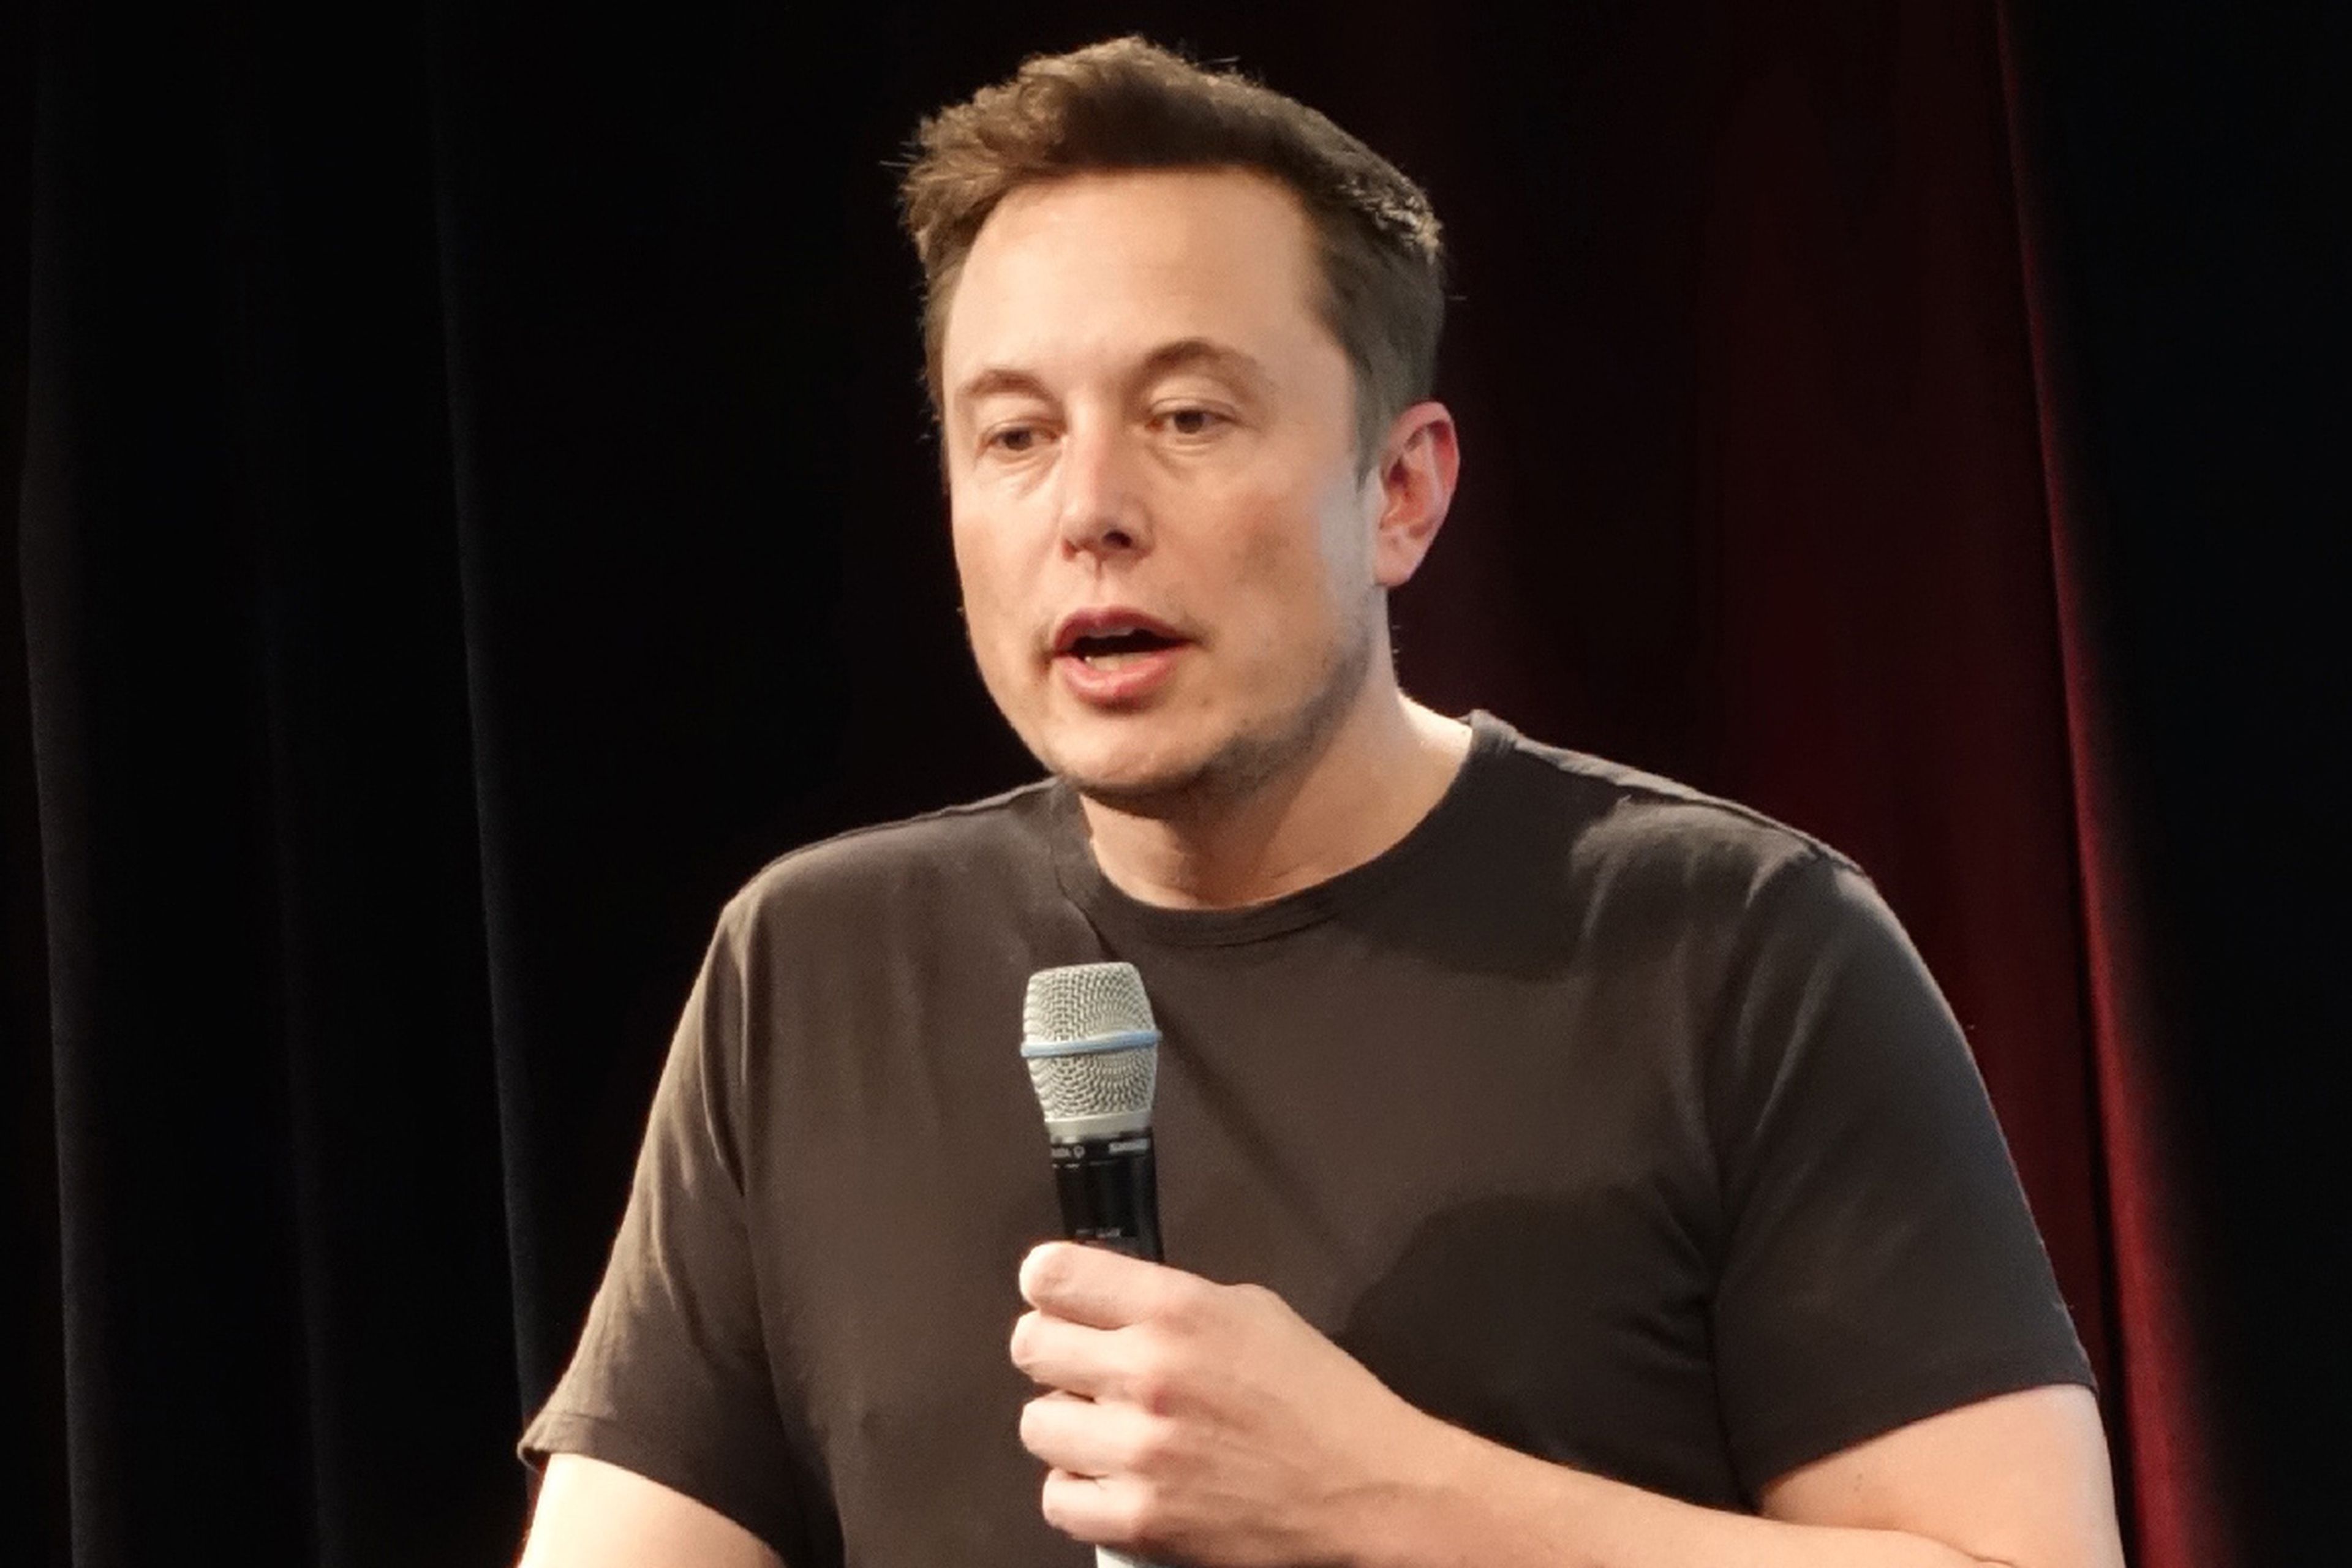 Los analistas señalan que Elon Musk debería dejar los mandos de Tesla